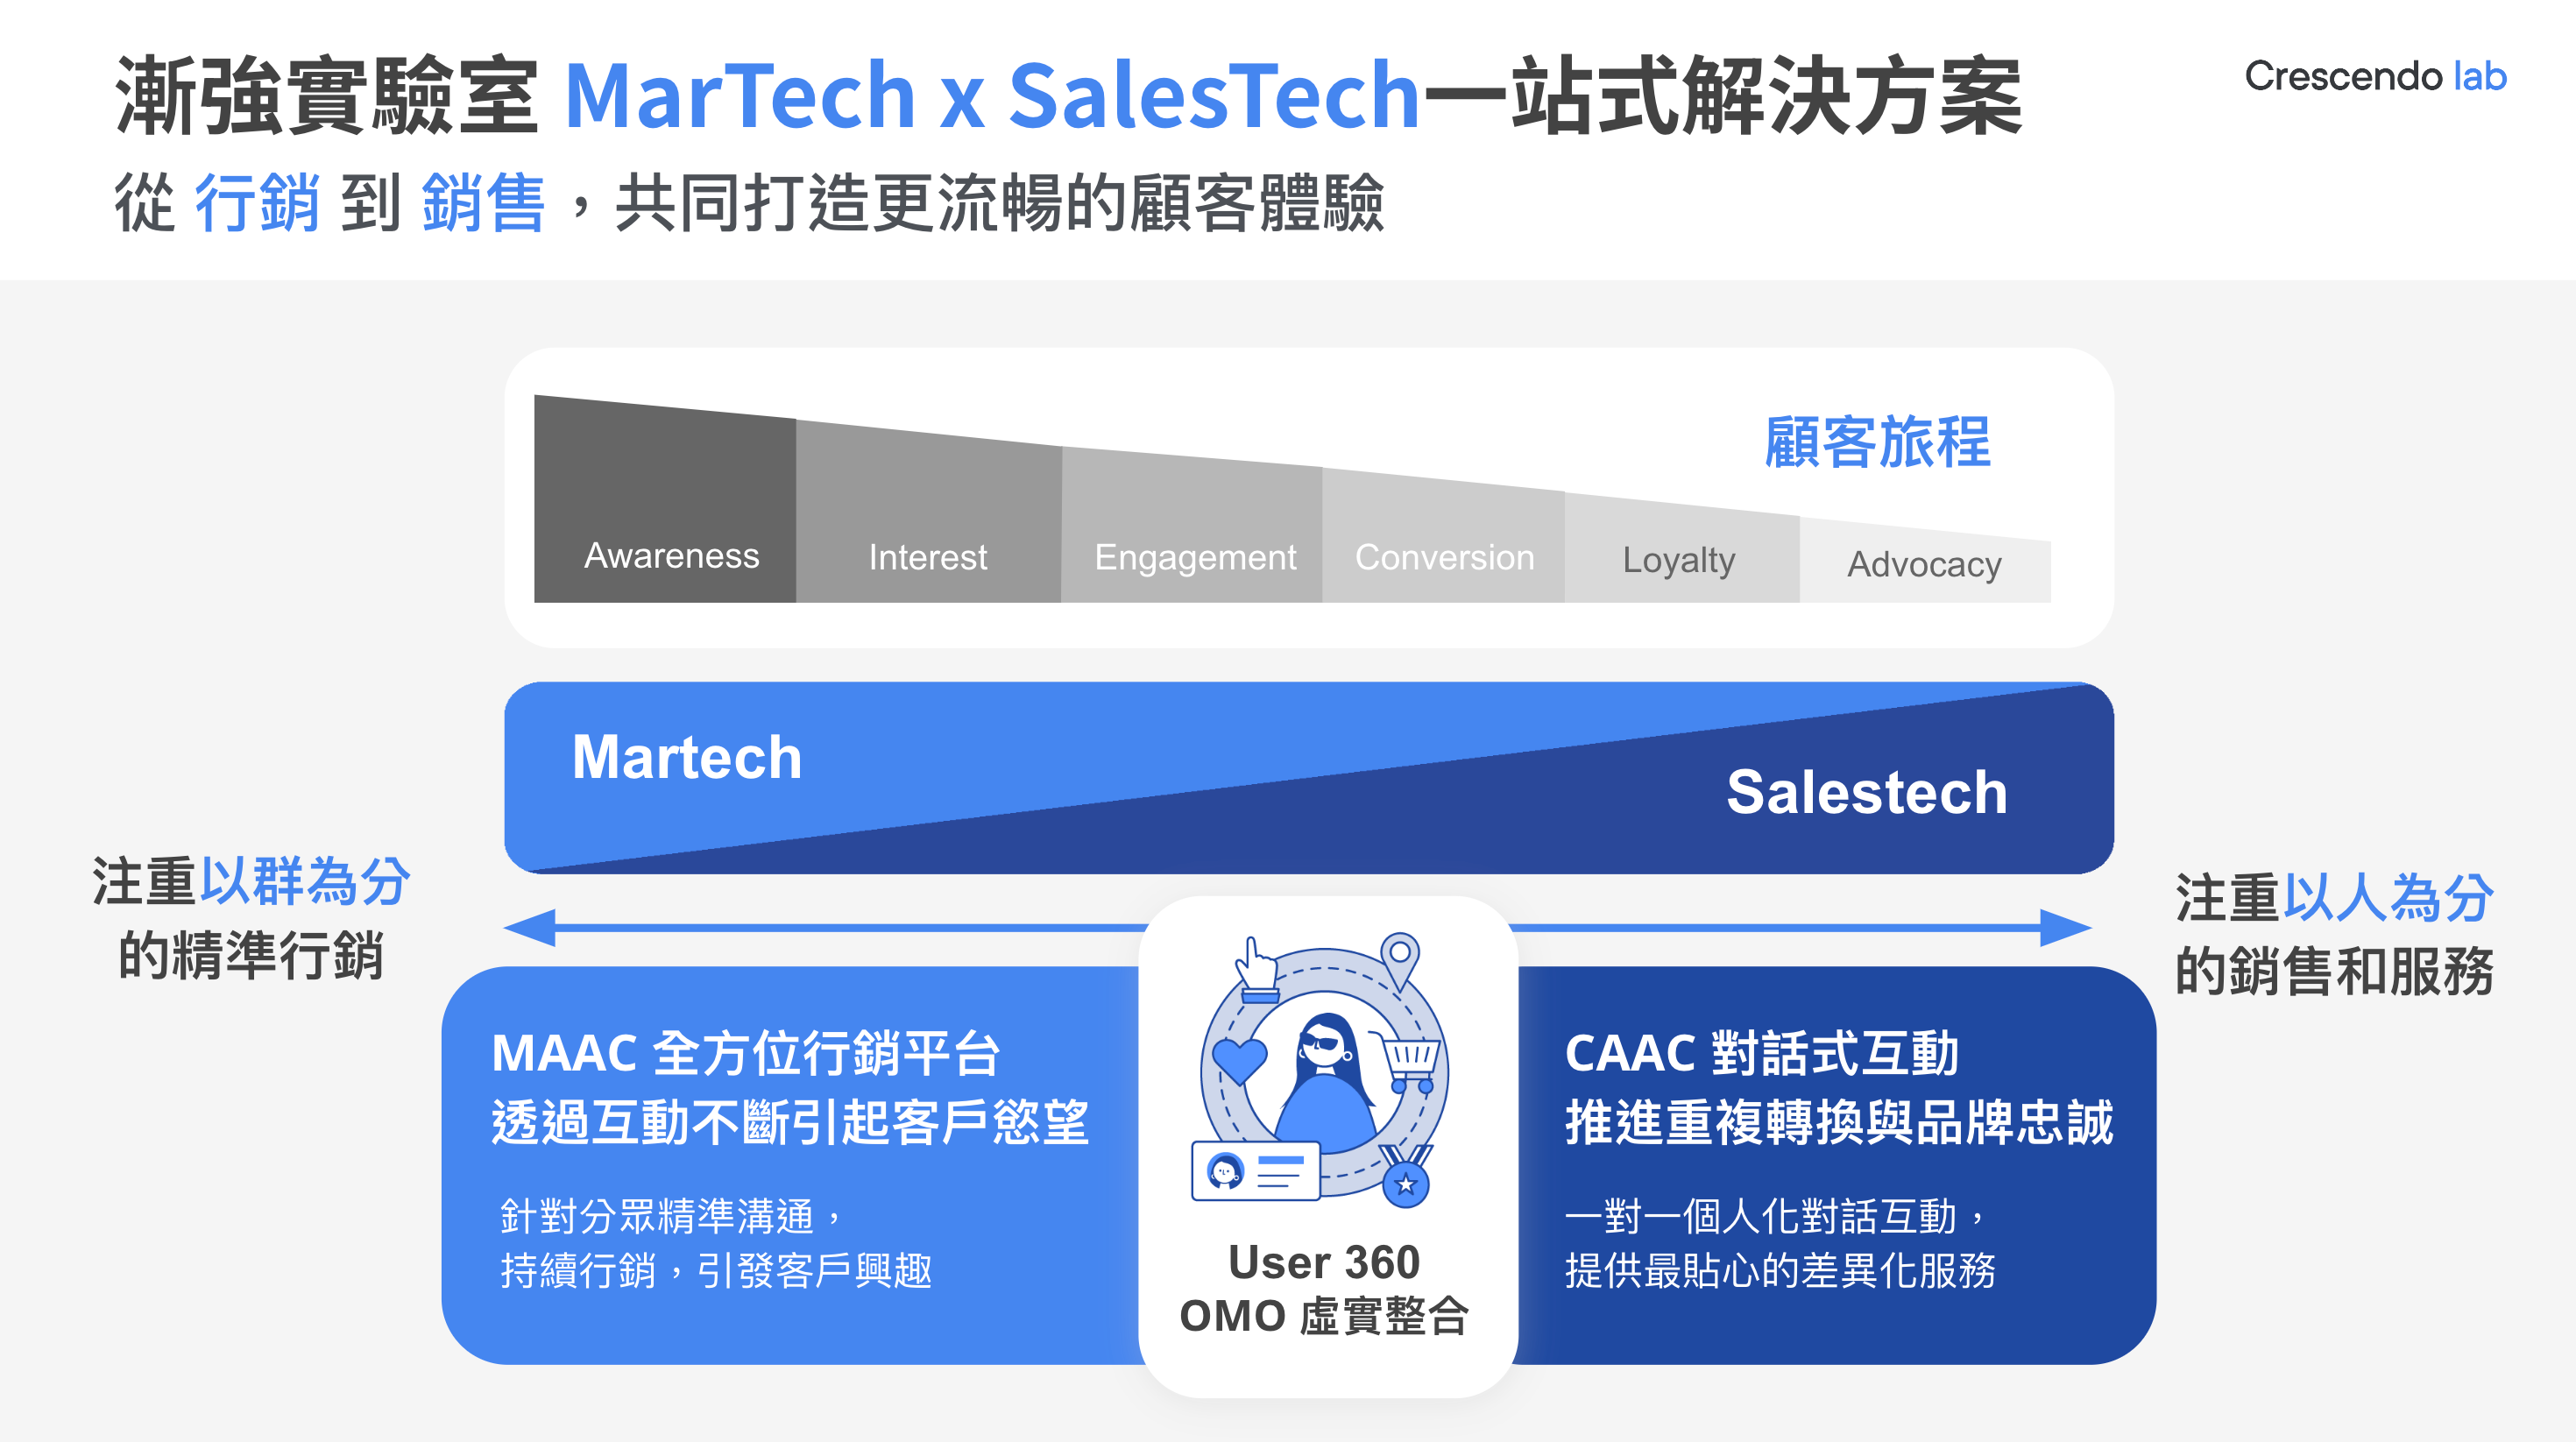 MarTech SalesTech